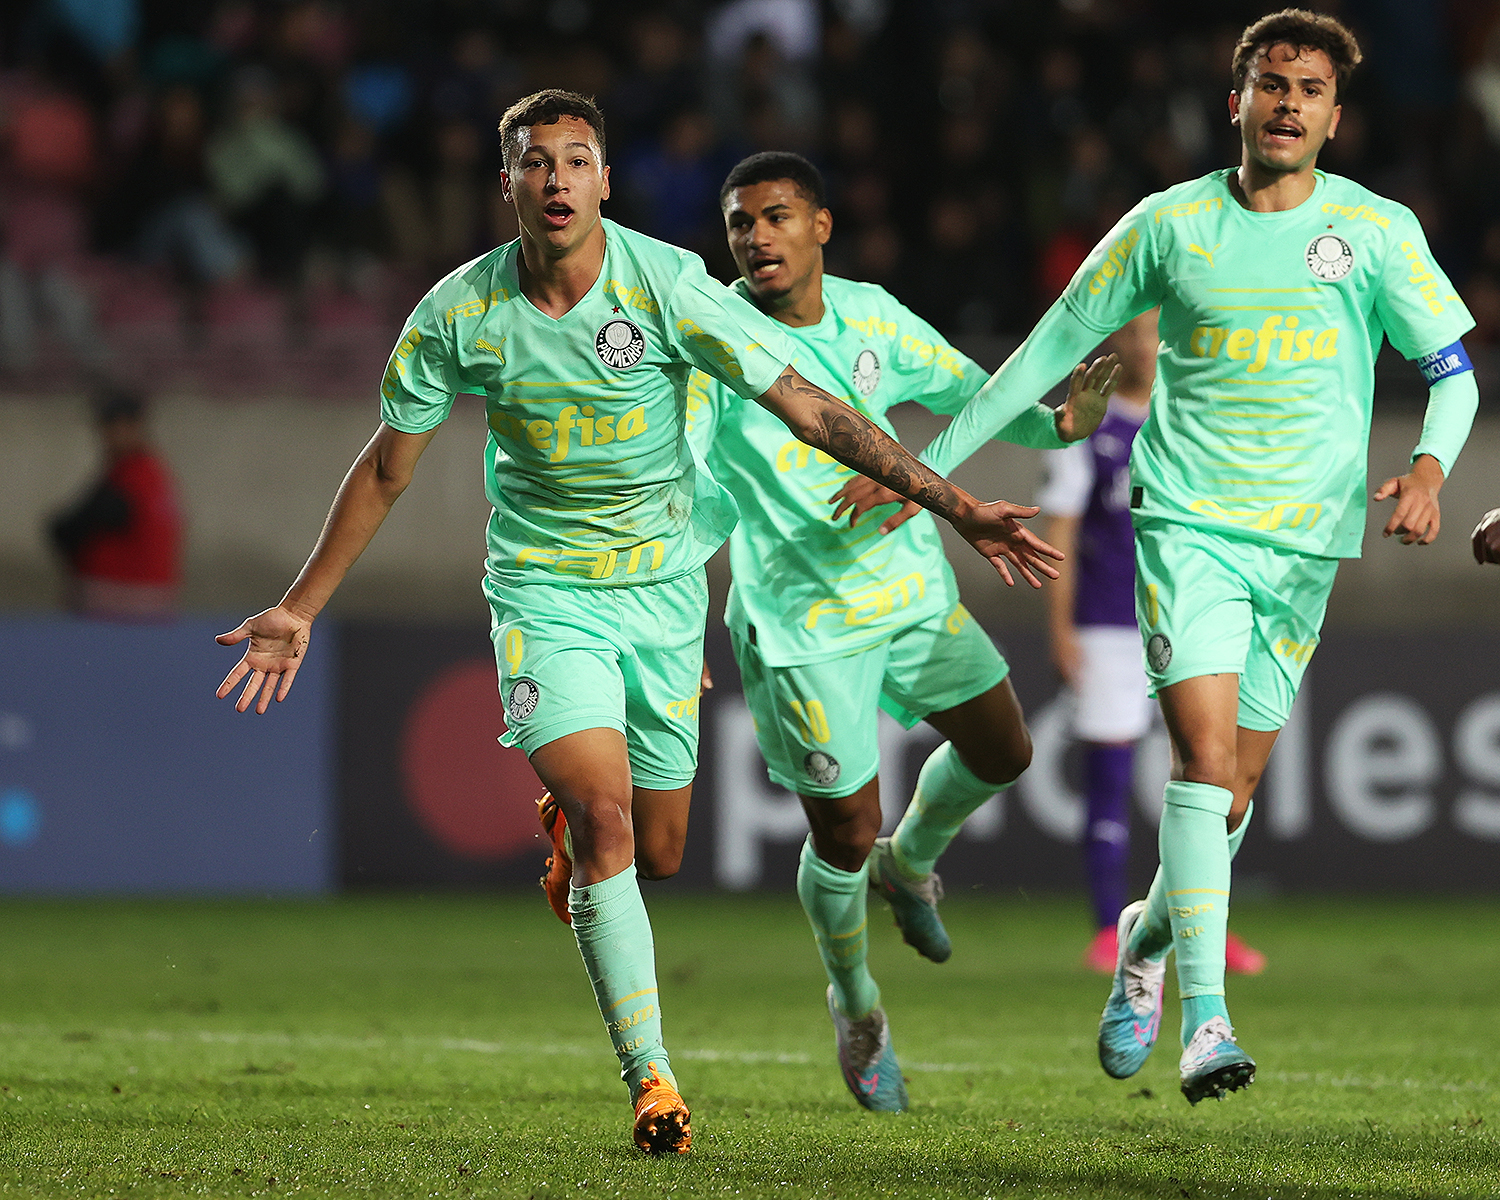 Palmeiras vence de virada, com gol nos acréscimos, pela Libertadores Sub-20